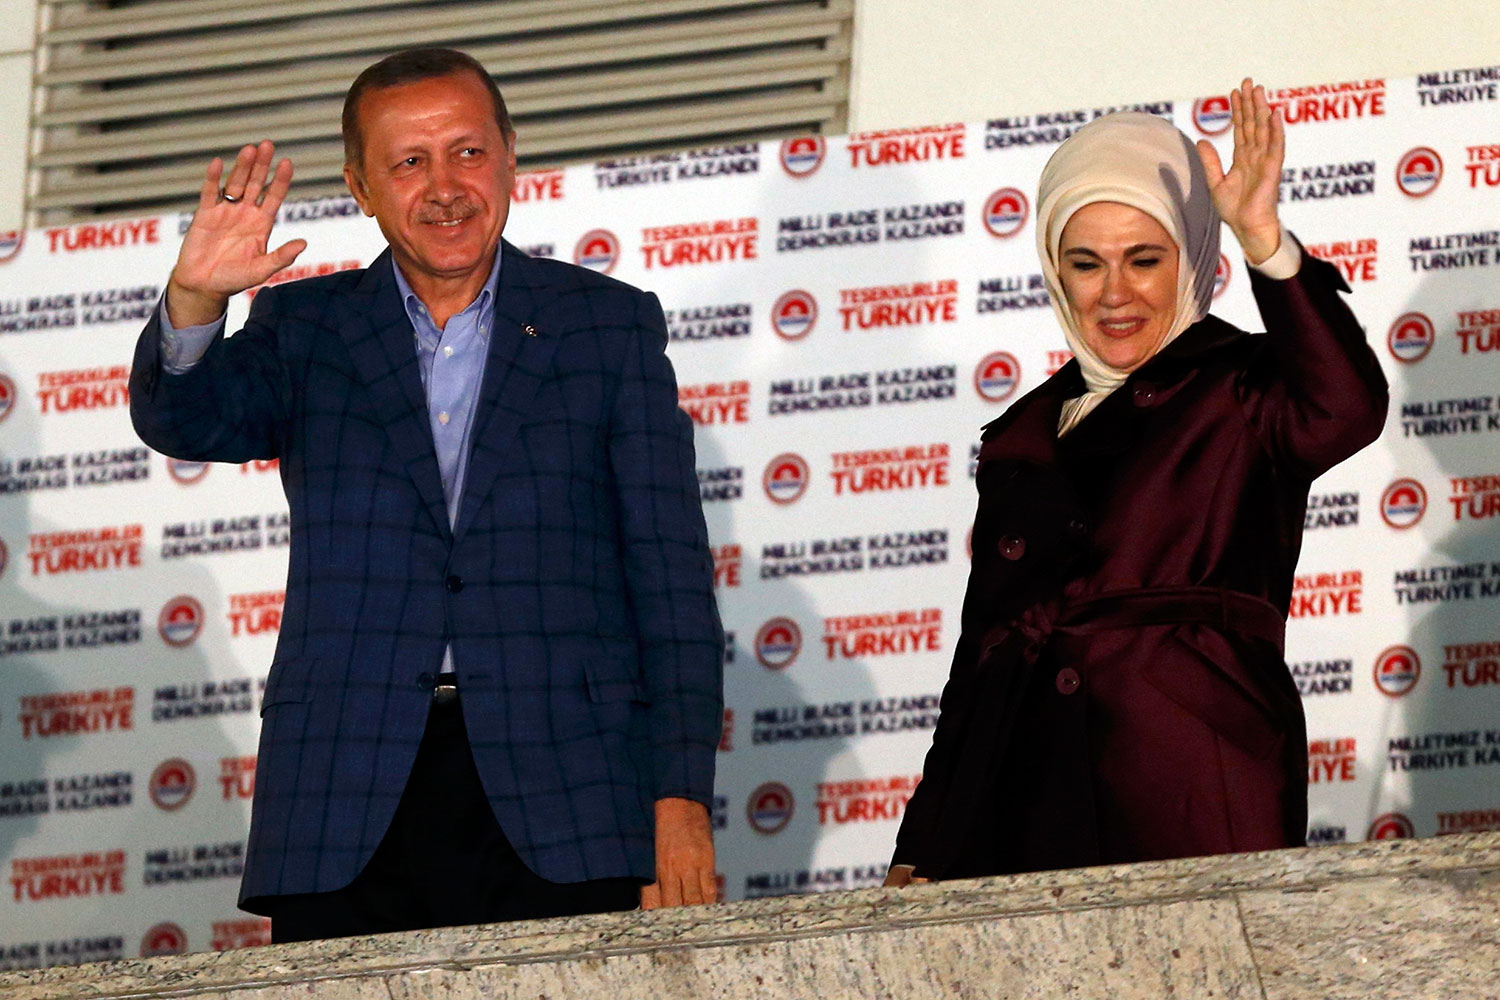 Erdogan gana las presidenciales turcas con mayoría absoluta